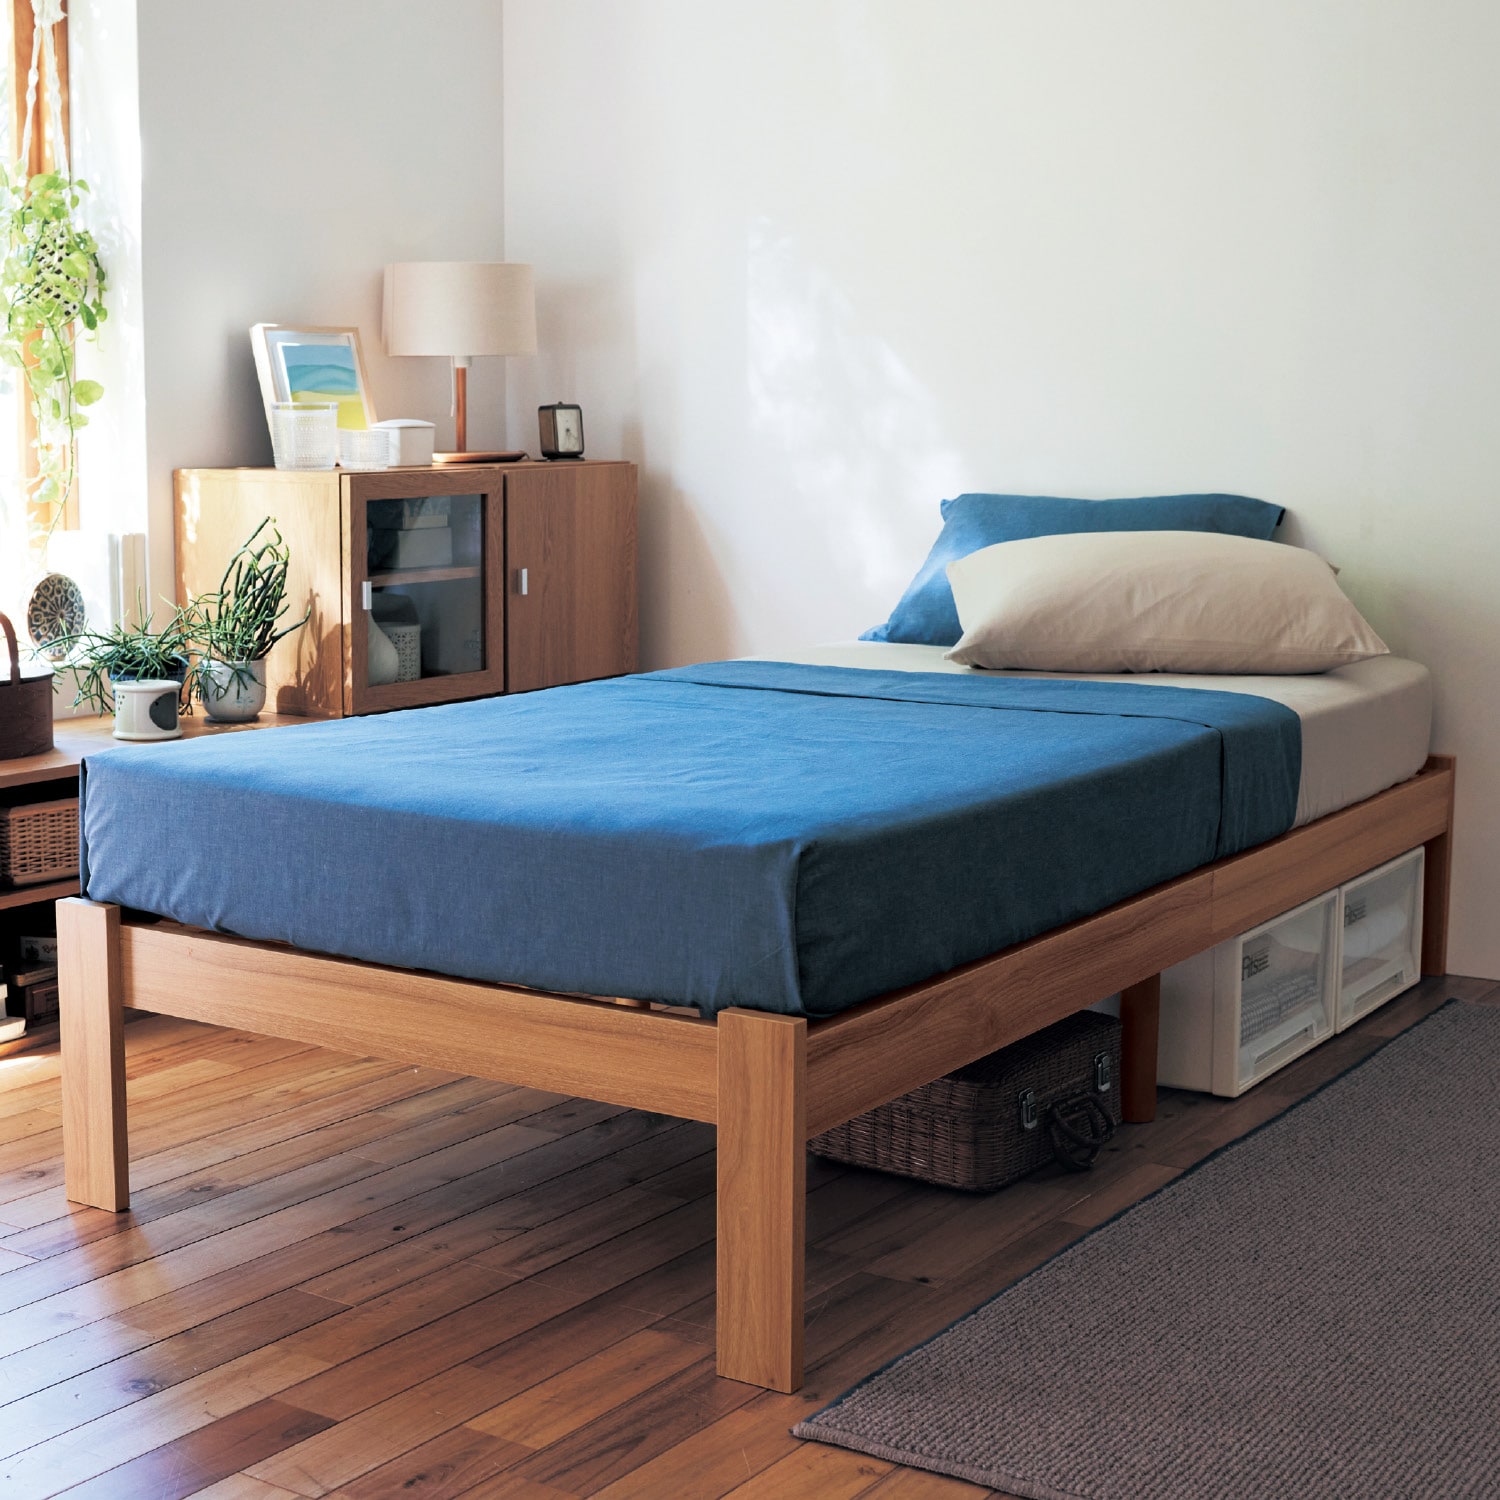 無印良品 ベッドフレーム ウォールナット材突板 シングル - ベッド 